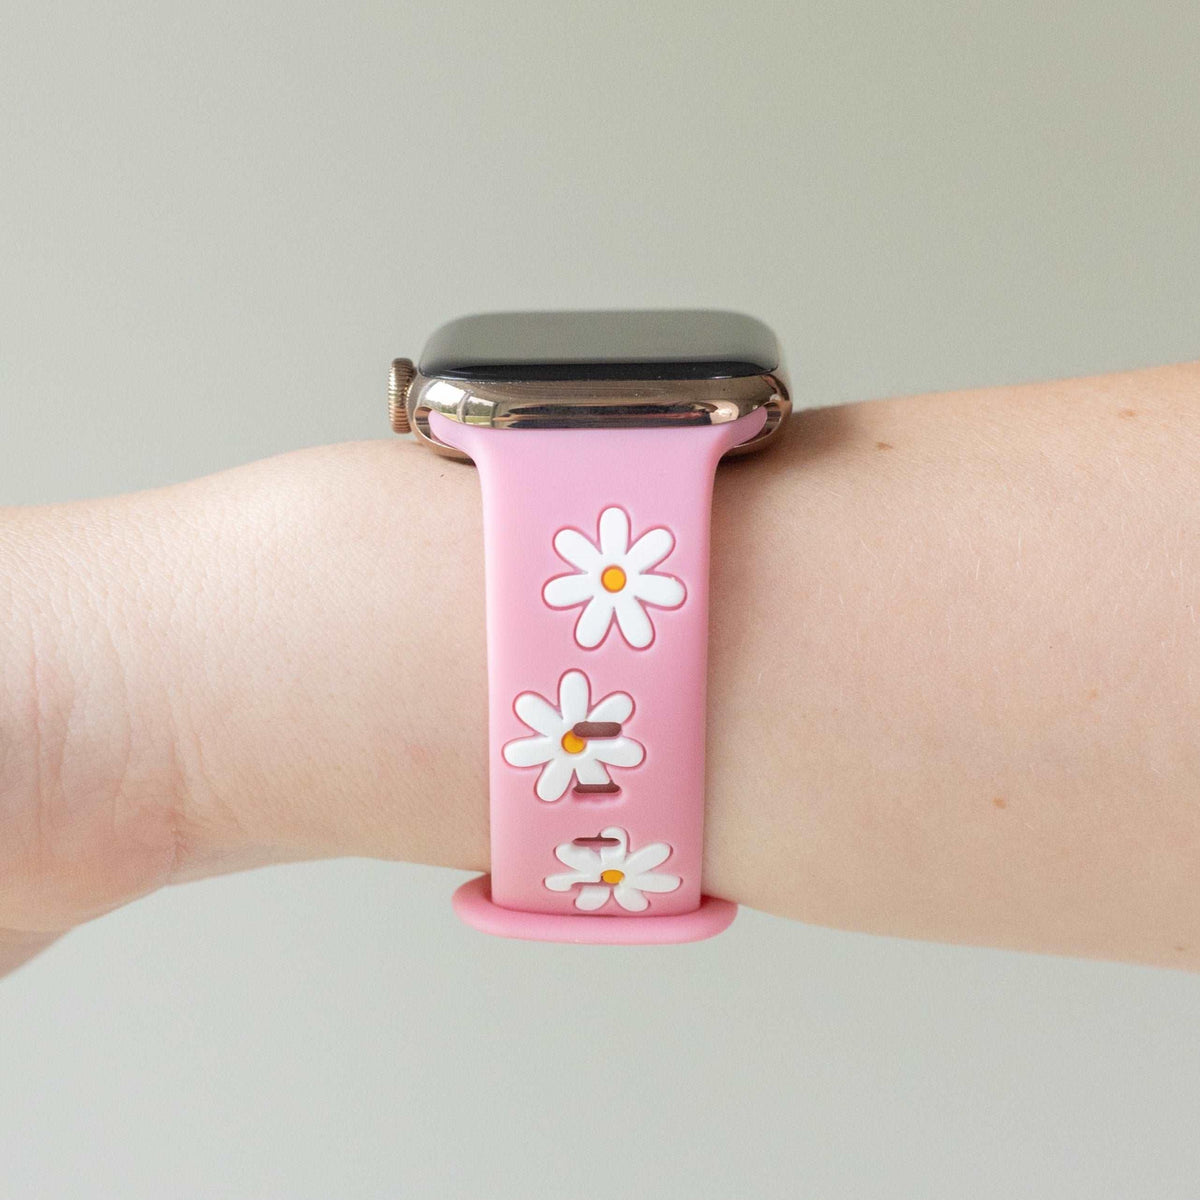 Darling Daisy Blushing Pink Apple Watch Band